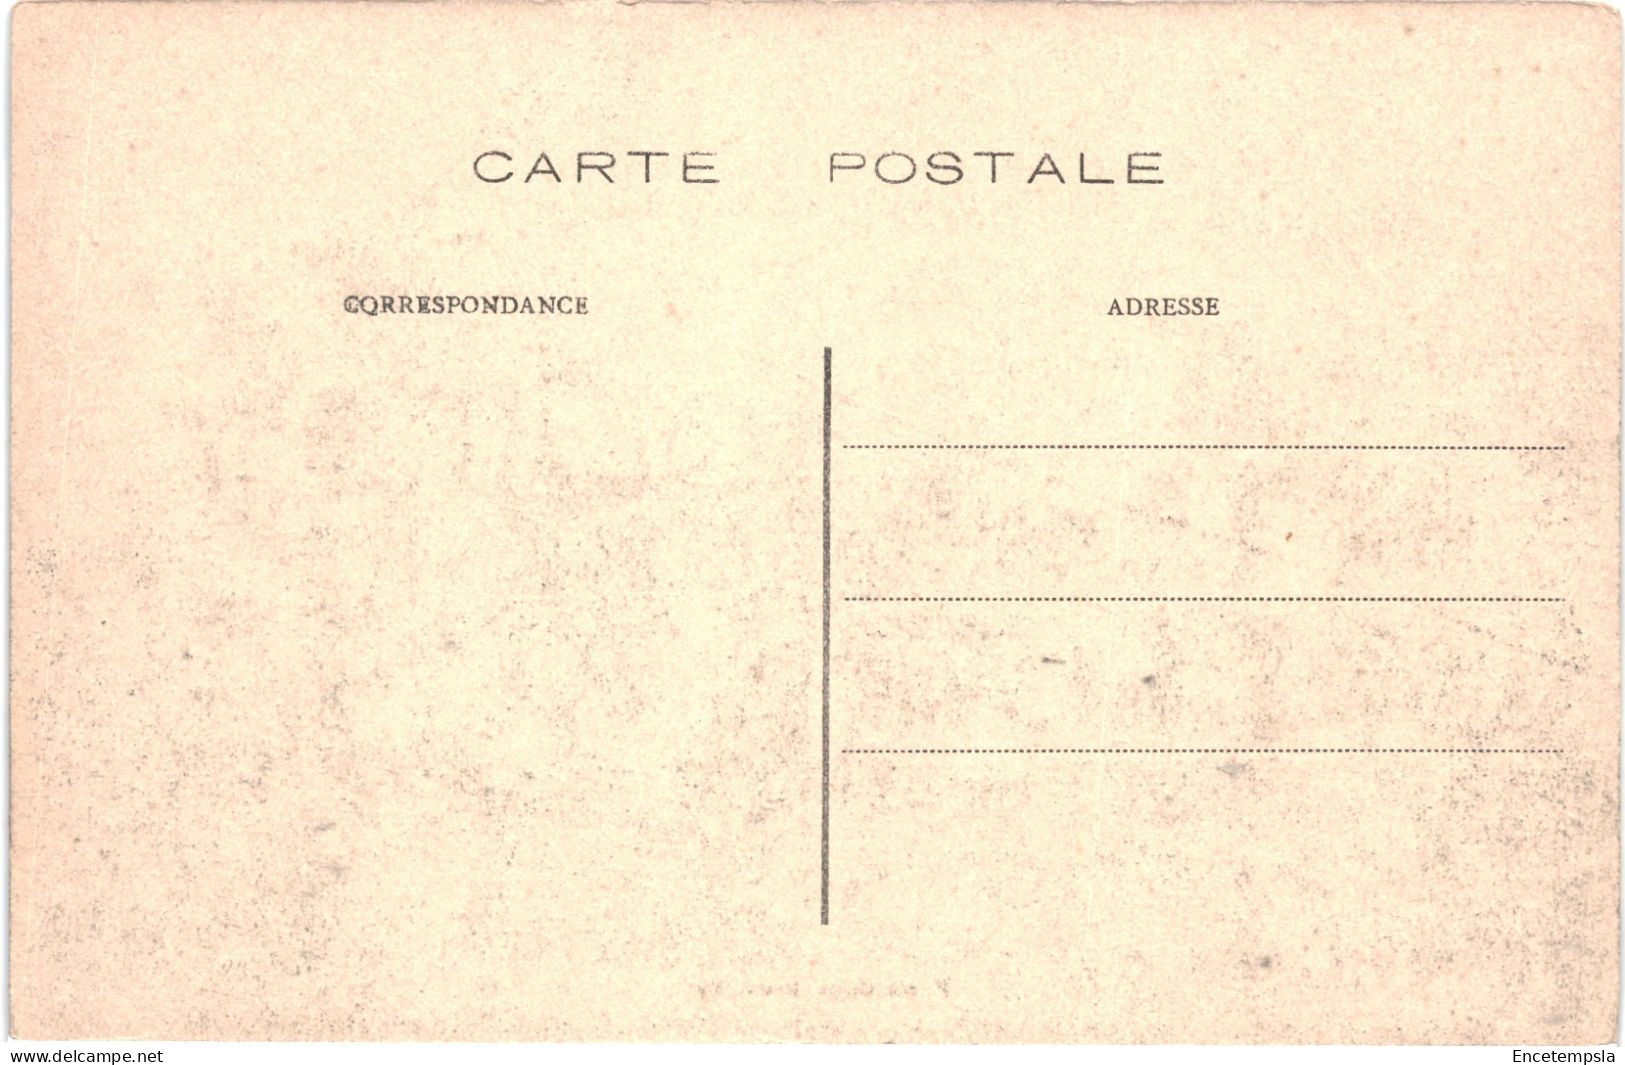 CPA Carte Postale Belgique Bruxelles Exposition De 1910 Village Sénégalais   VM80217 - Exposiciones Universales